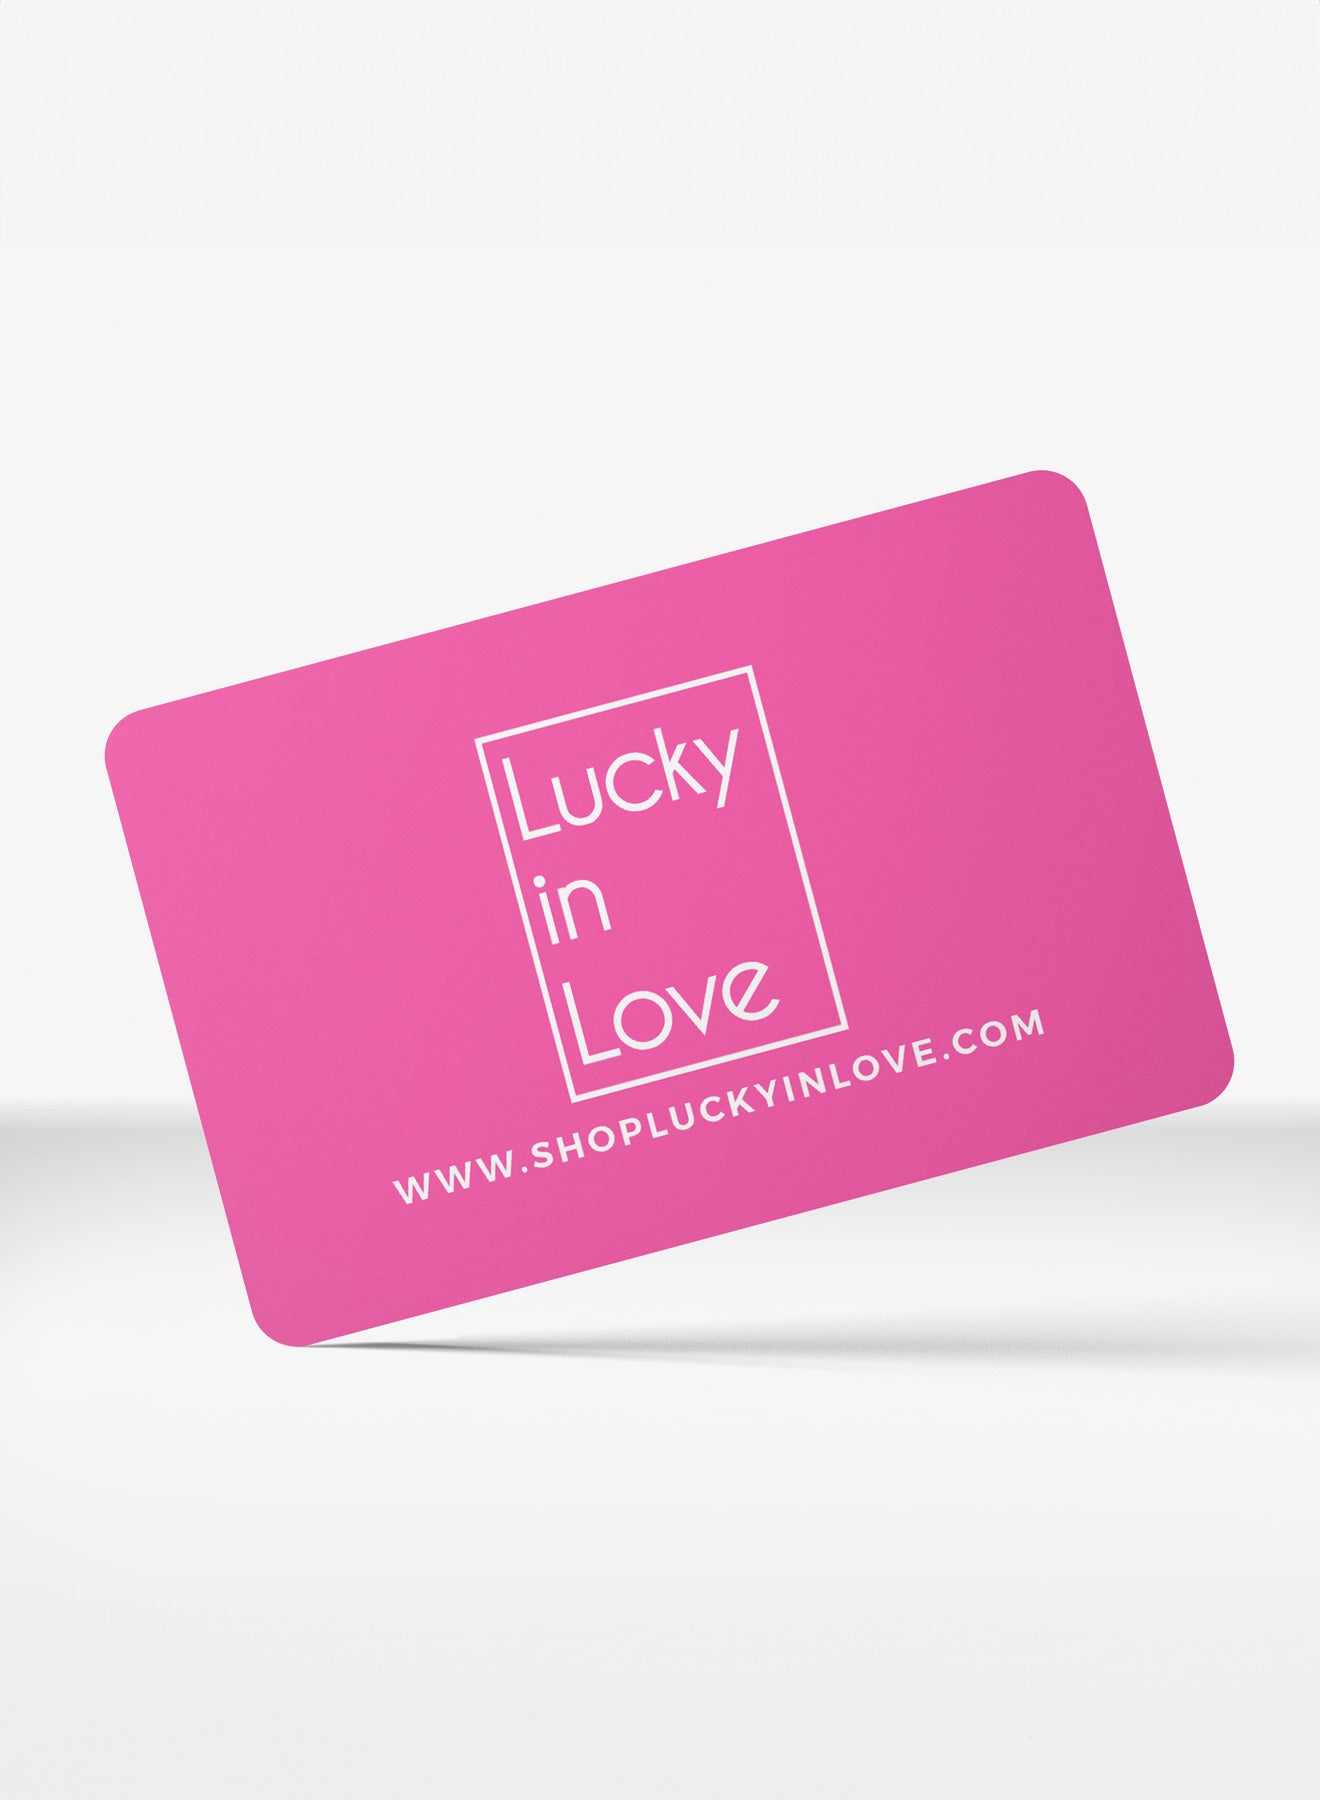 LUCKY-IN-LOVE-GIFT-CARD-PRODUCT_21430912-6e1e-4e8c-b8e3-92460455bb0b.jpg